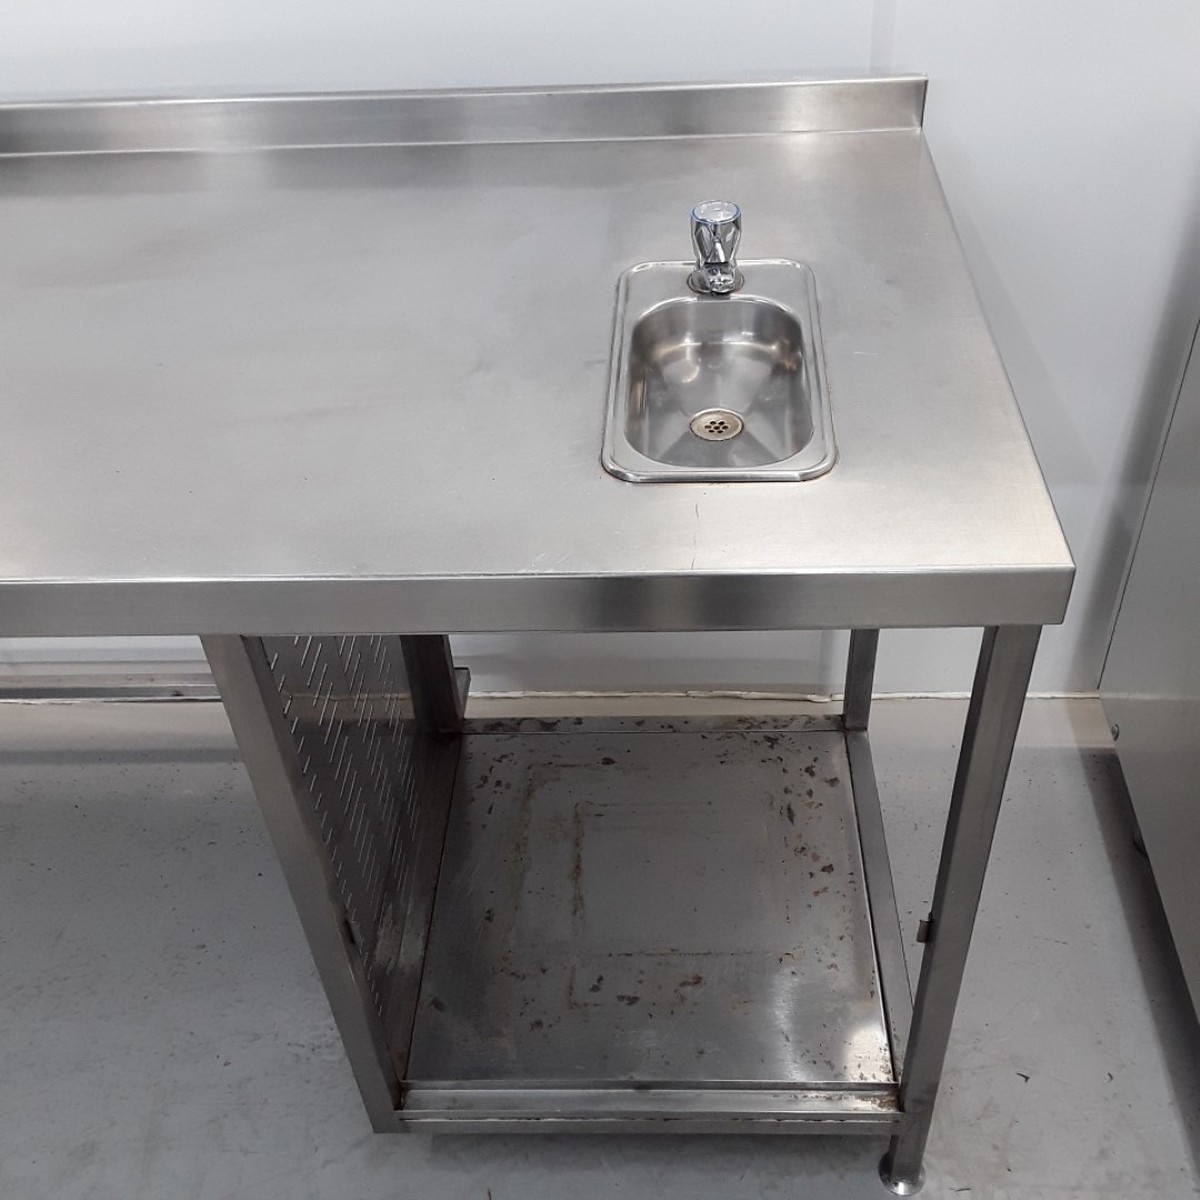 Buy Used Stainless Steel Table Sink 385 